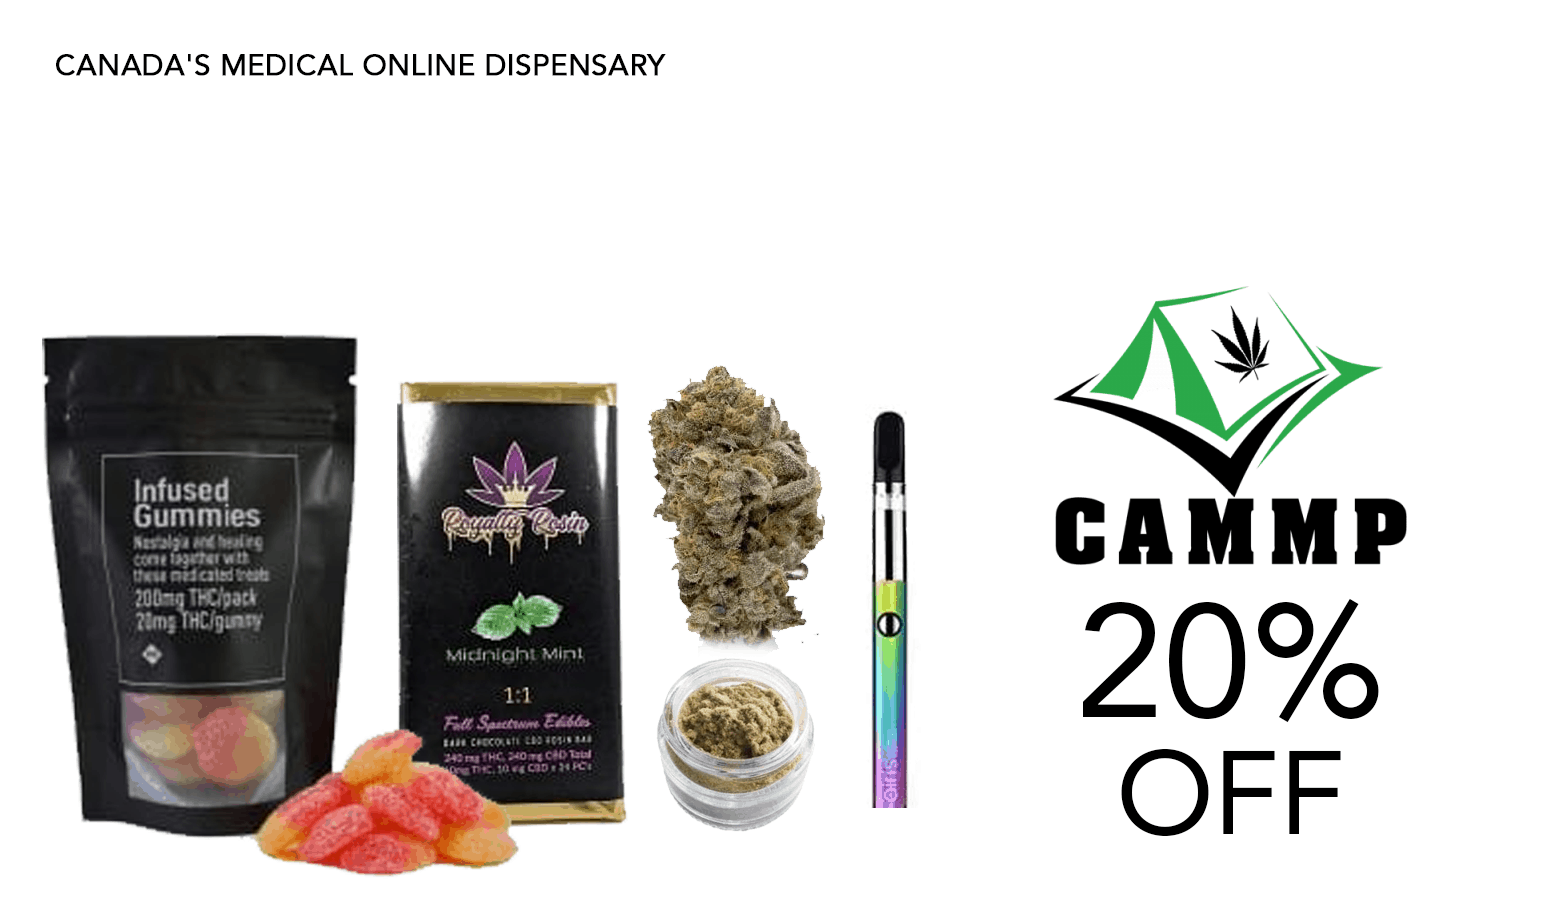 CAMMP Cannabis Coupon Code 20 Percent Offer Website